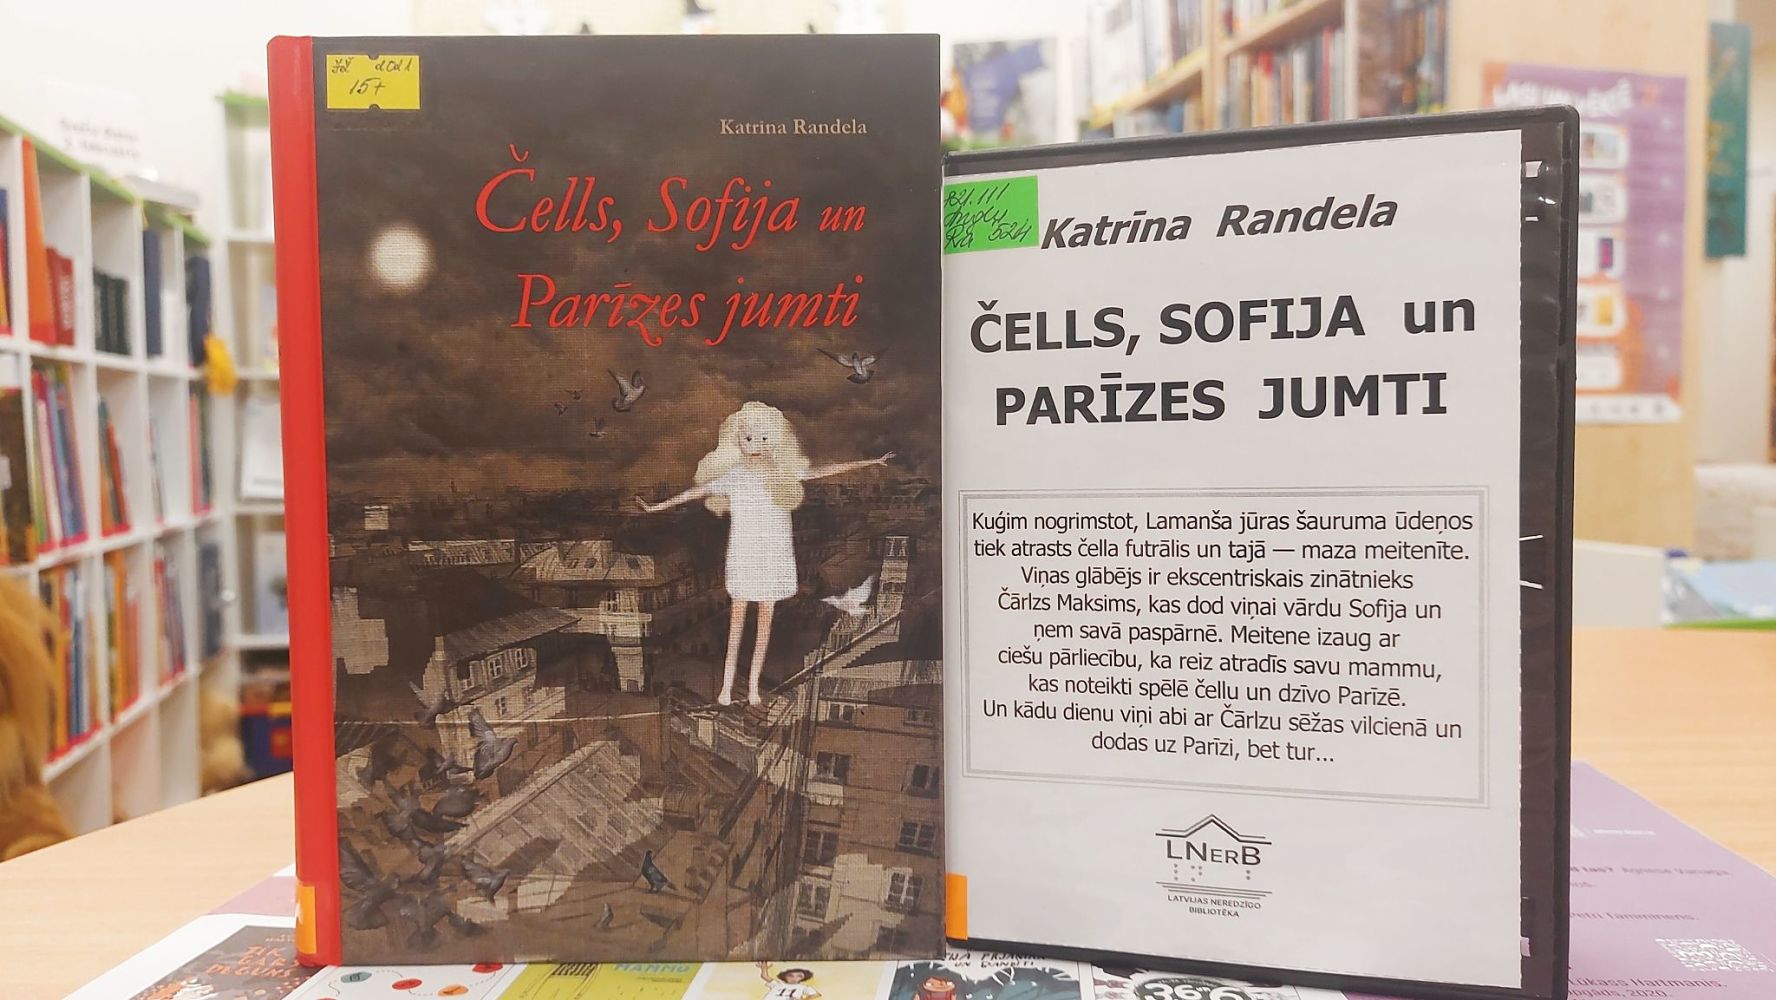 Katrīna Randela "Čells, Sofija un Parīzes jumti" parastajā iespiedrakstā un audio formātā. 15+